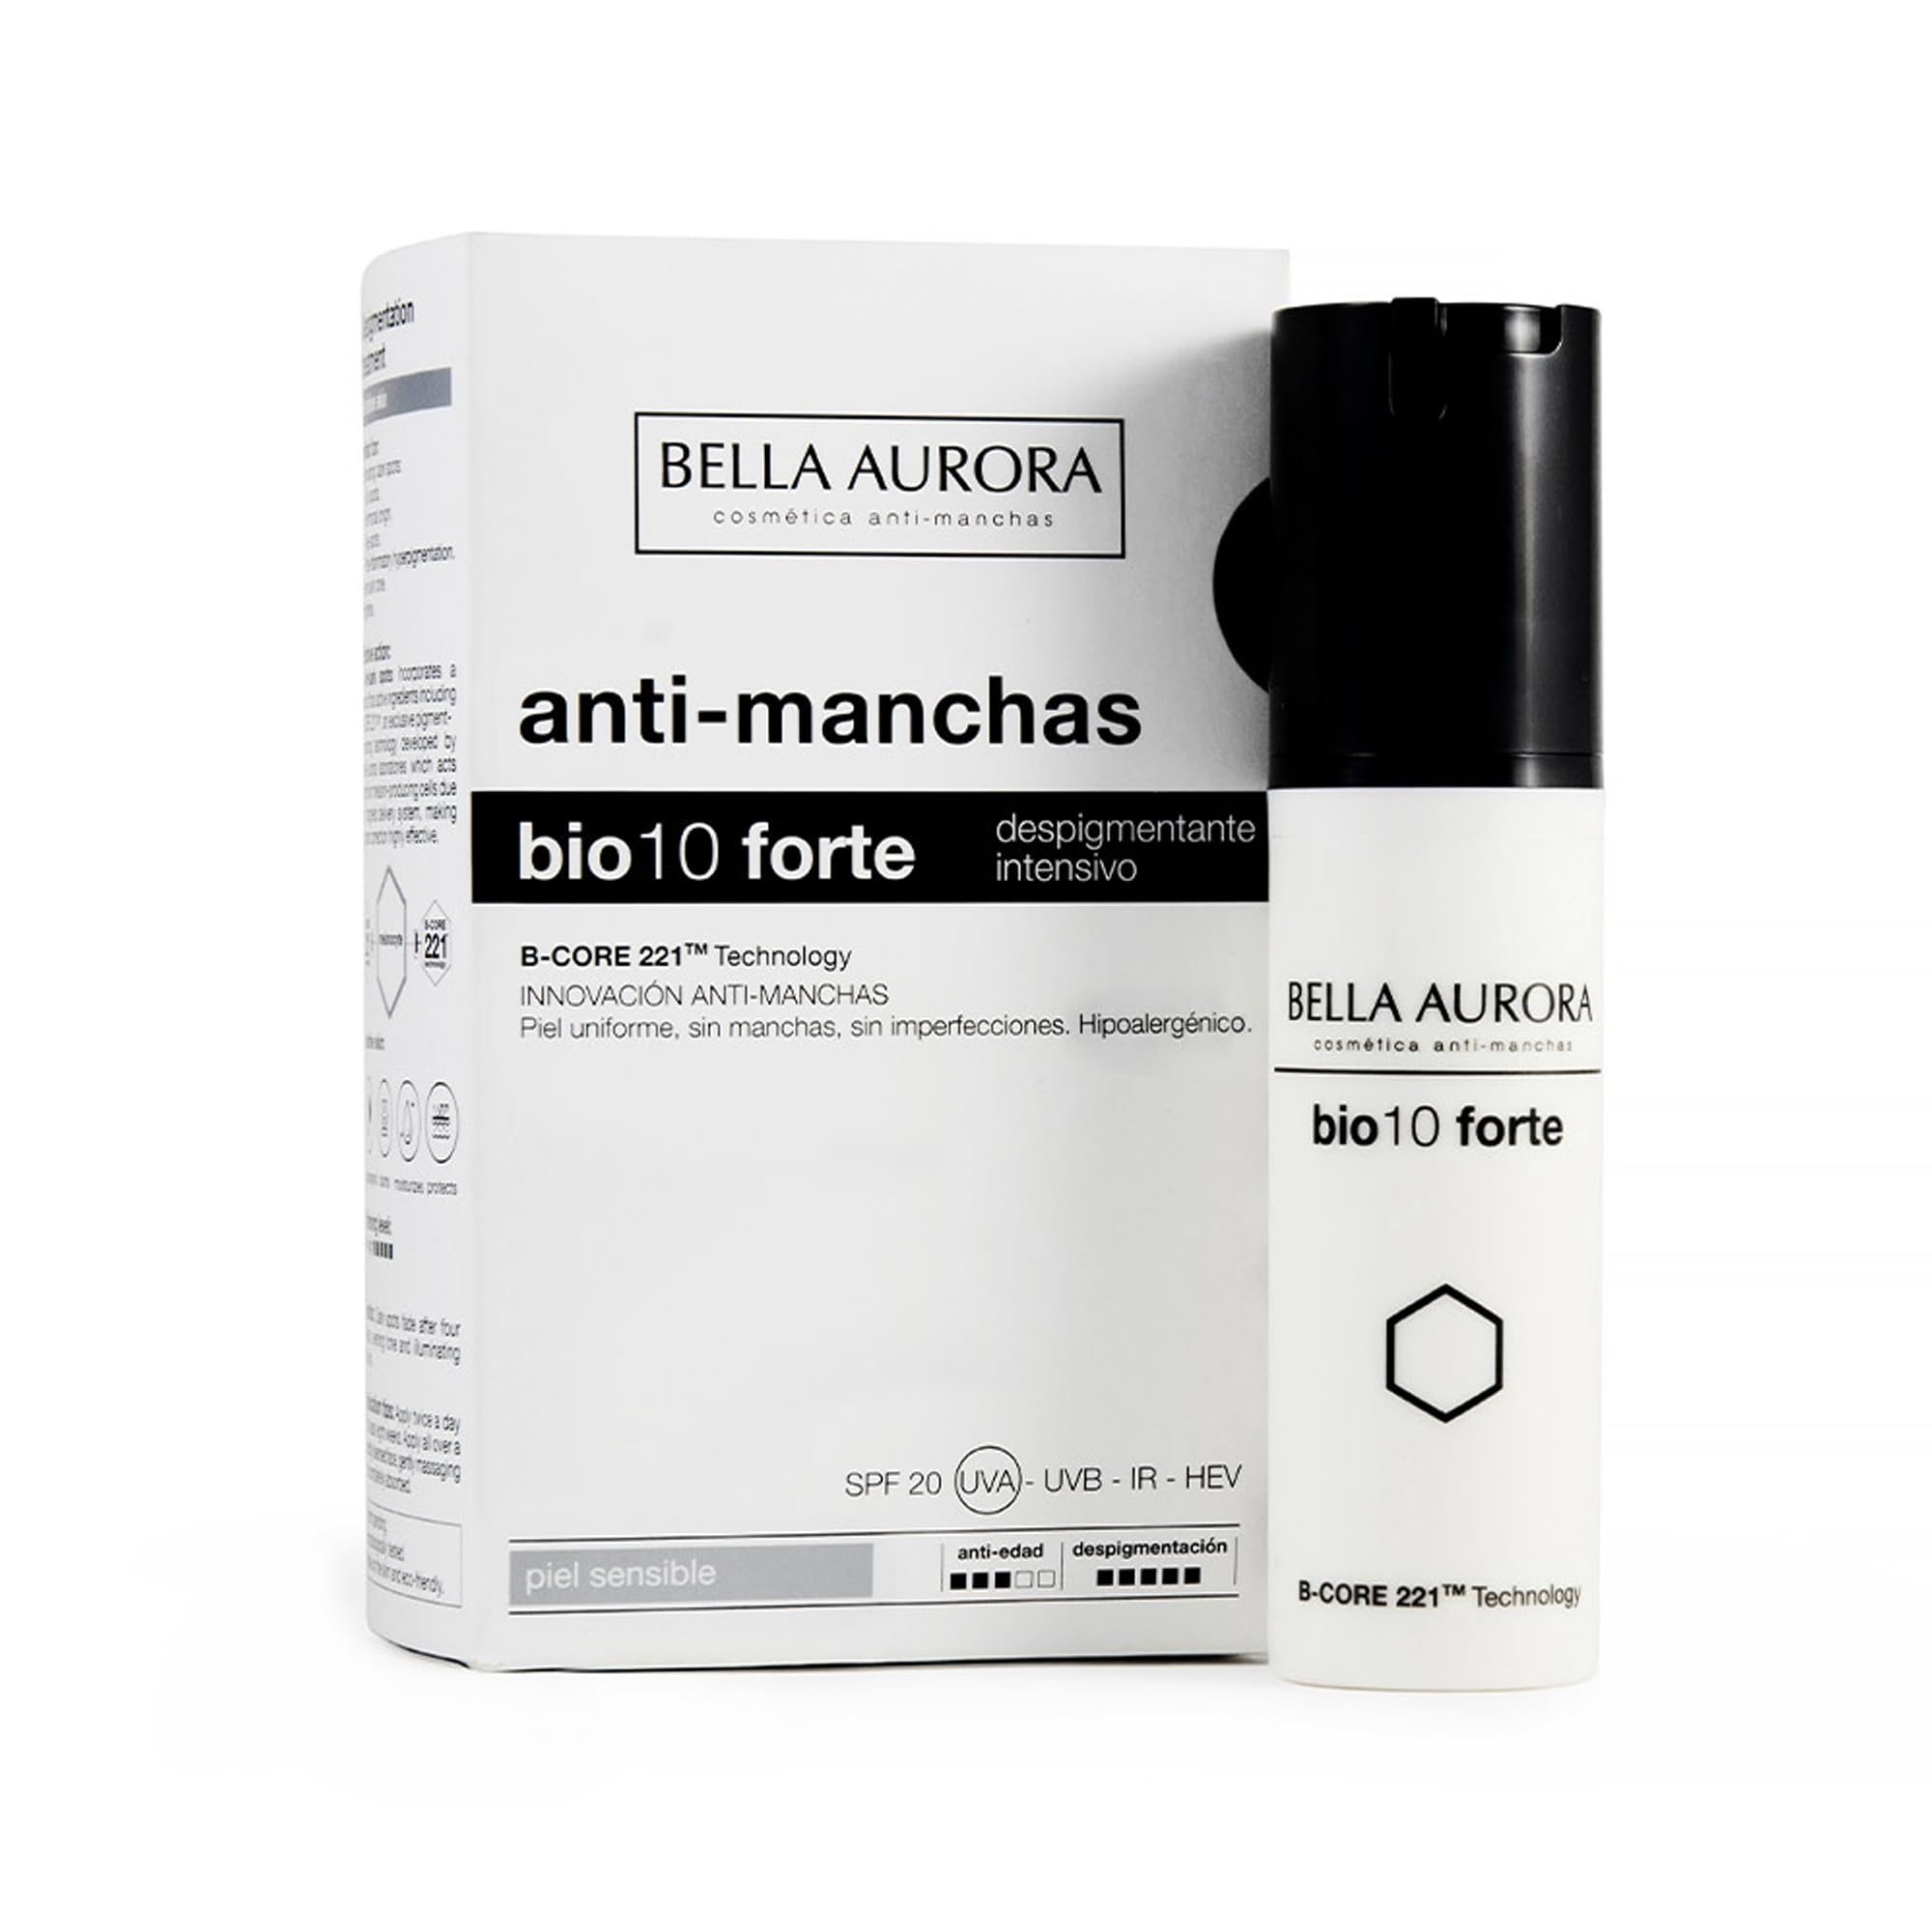 BELLA AURORA Anti Pickel Creme für empfindliche Hautunreinheiten Rötungen und Hautverbesserung, Almond, 30 ml